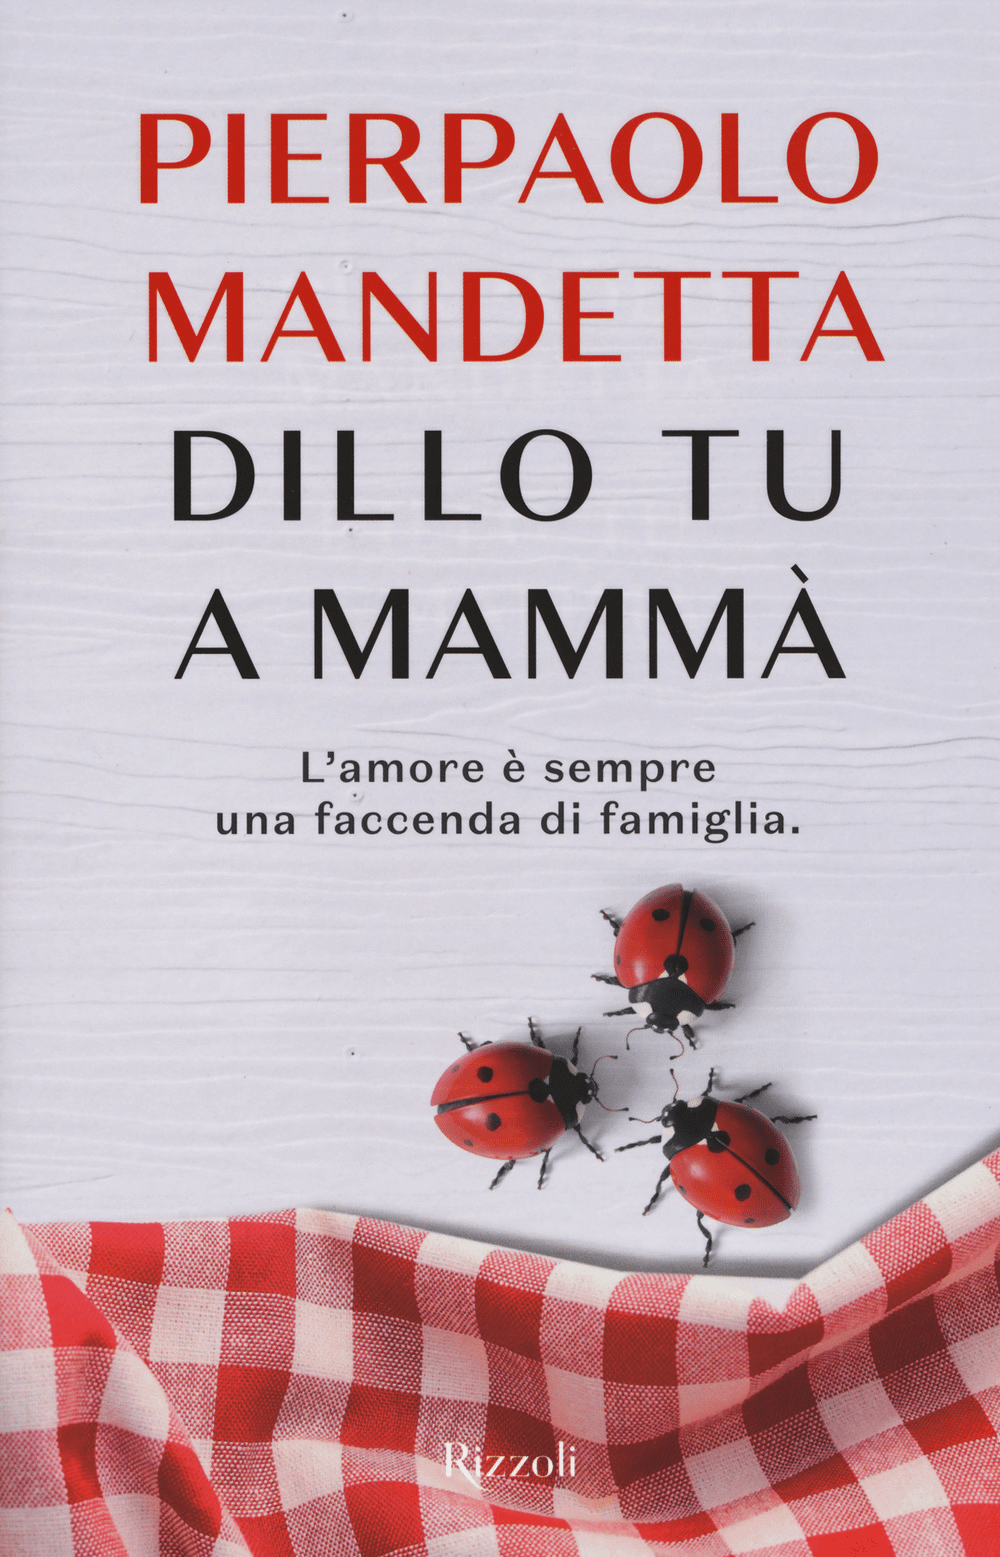 Pierpaolo Mandetta: "Il mio coming out tra botte, sesso, insulti e ossessioni" - 9788817094474 0 0 0 80 - Gay.it